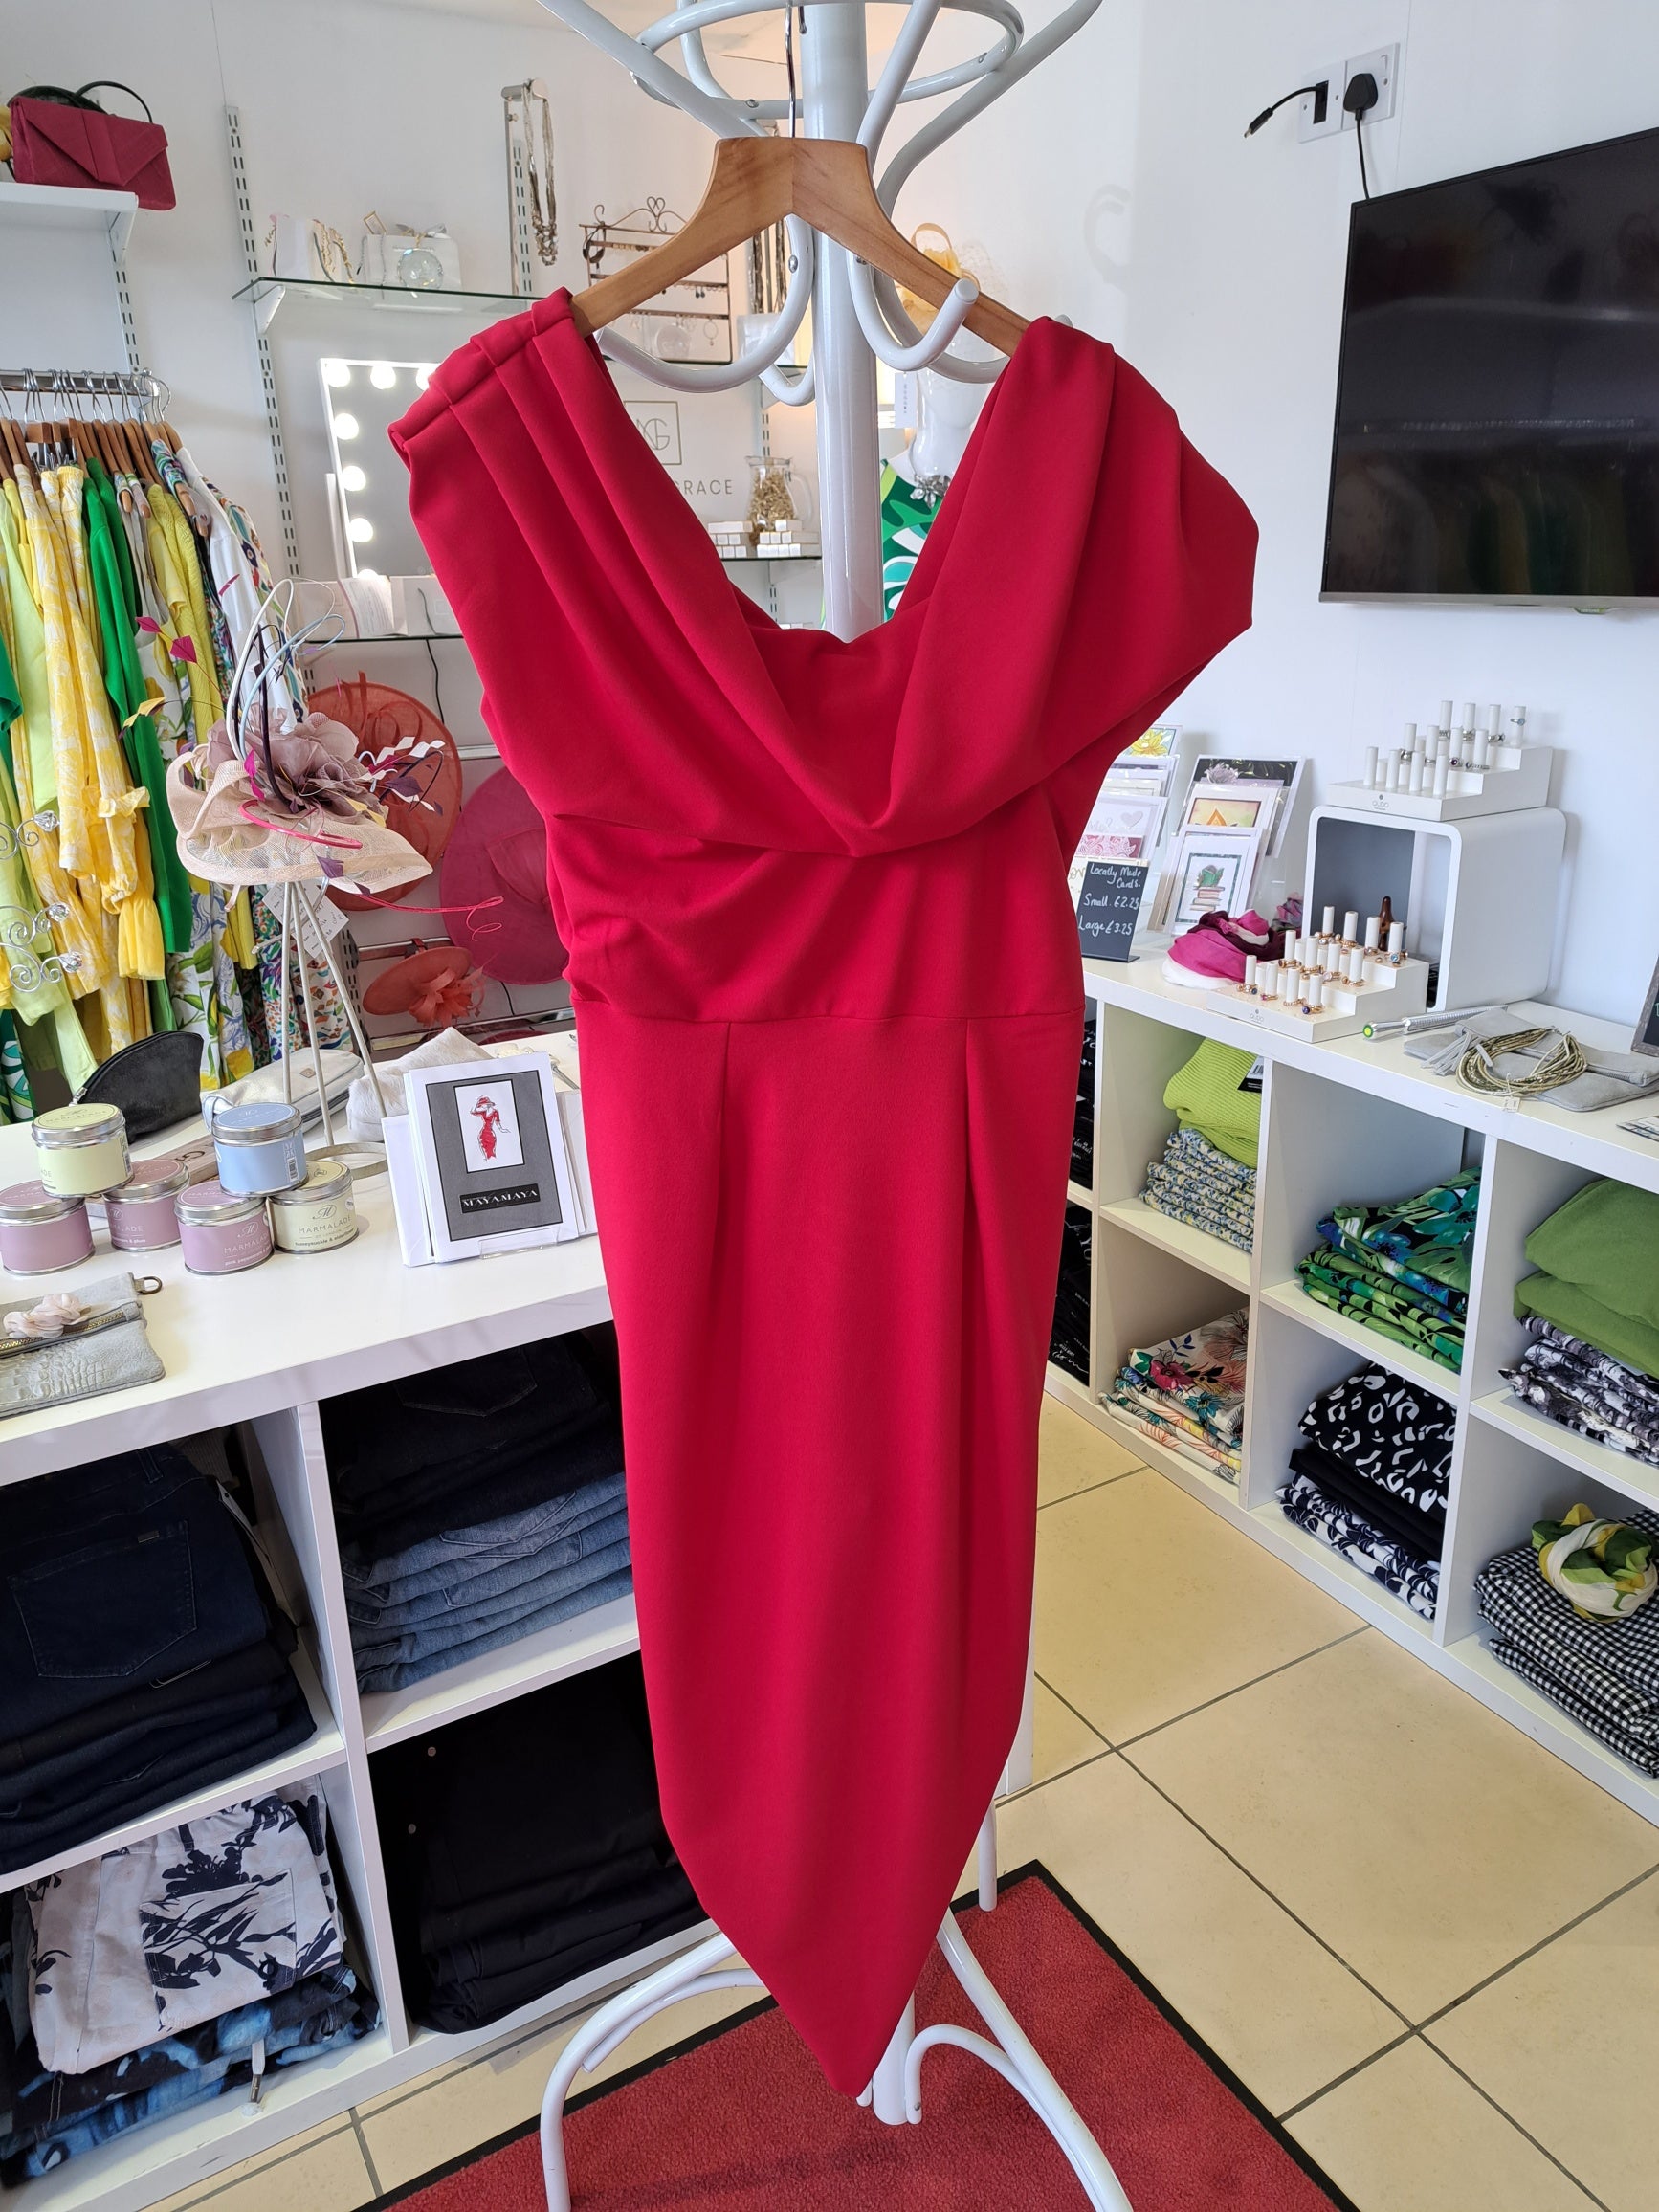 Red stretch bodycon dress - Maya Maya Ltd